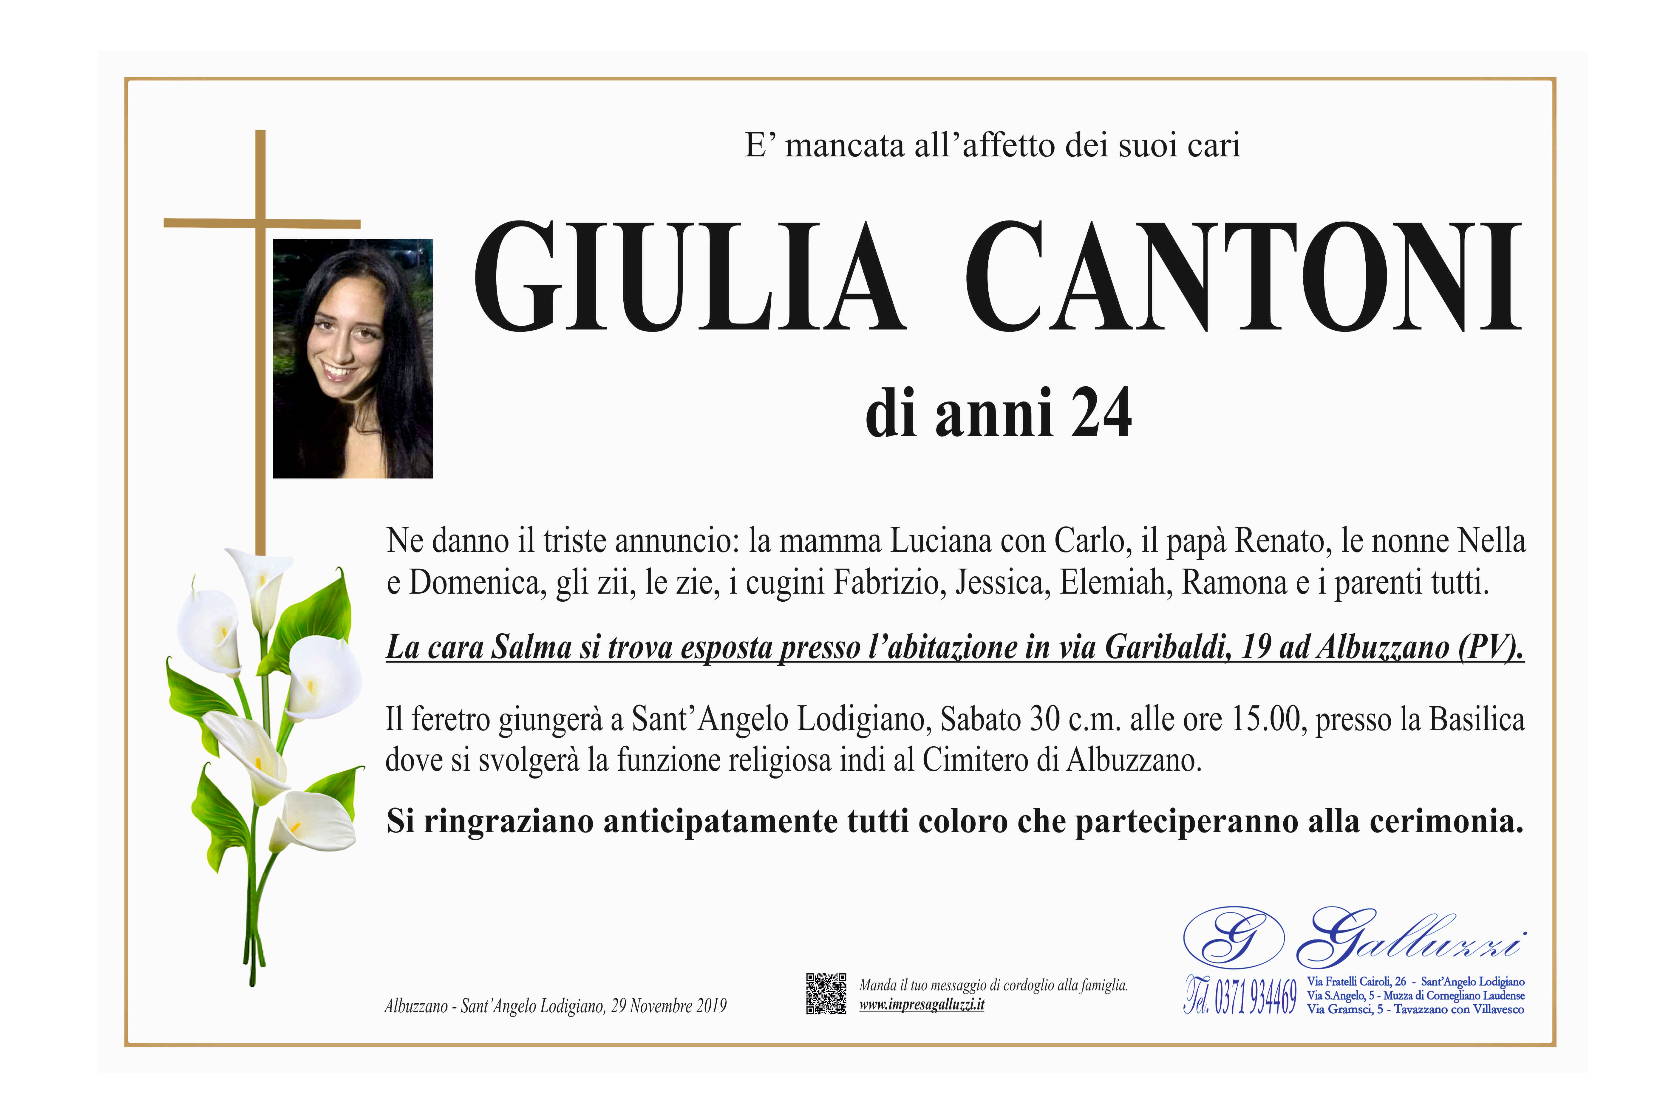 Giulia Cantoni